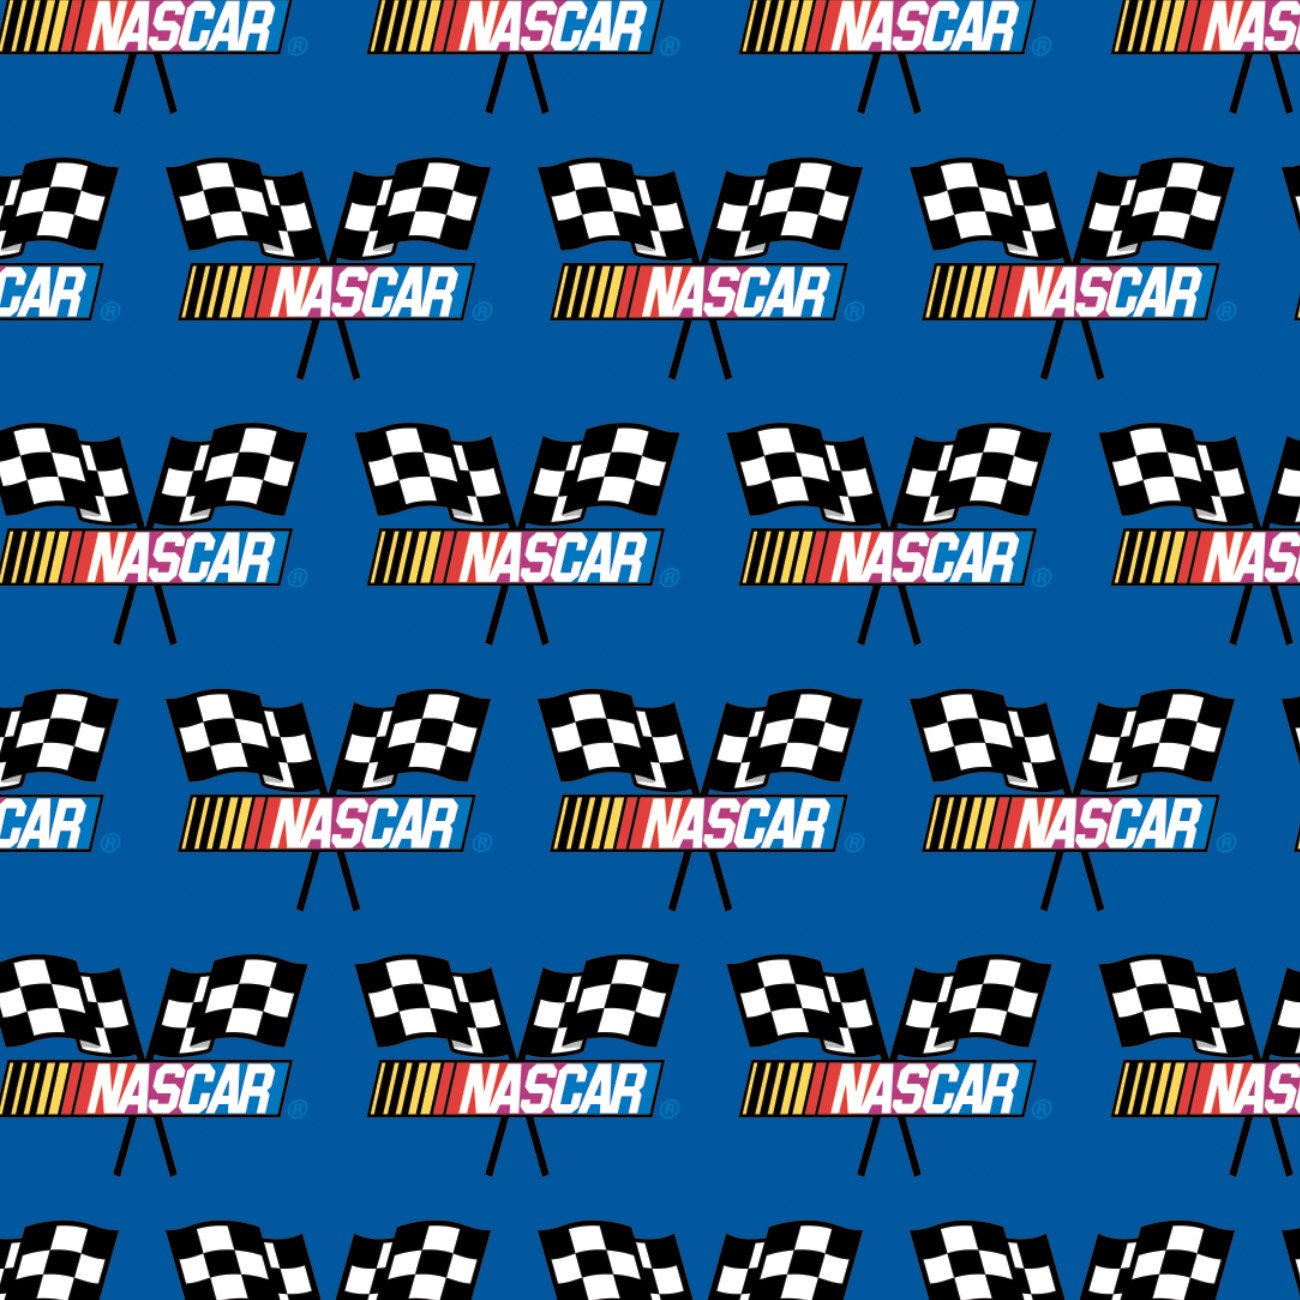 NASCAR - Checkered Flag - Printed Fleece by NASCAR- Blue